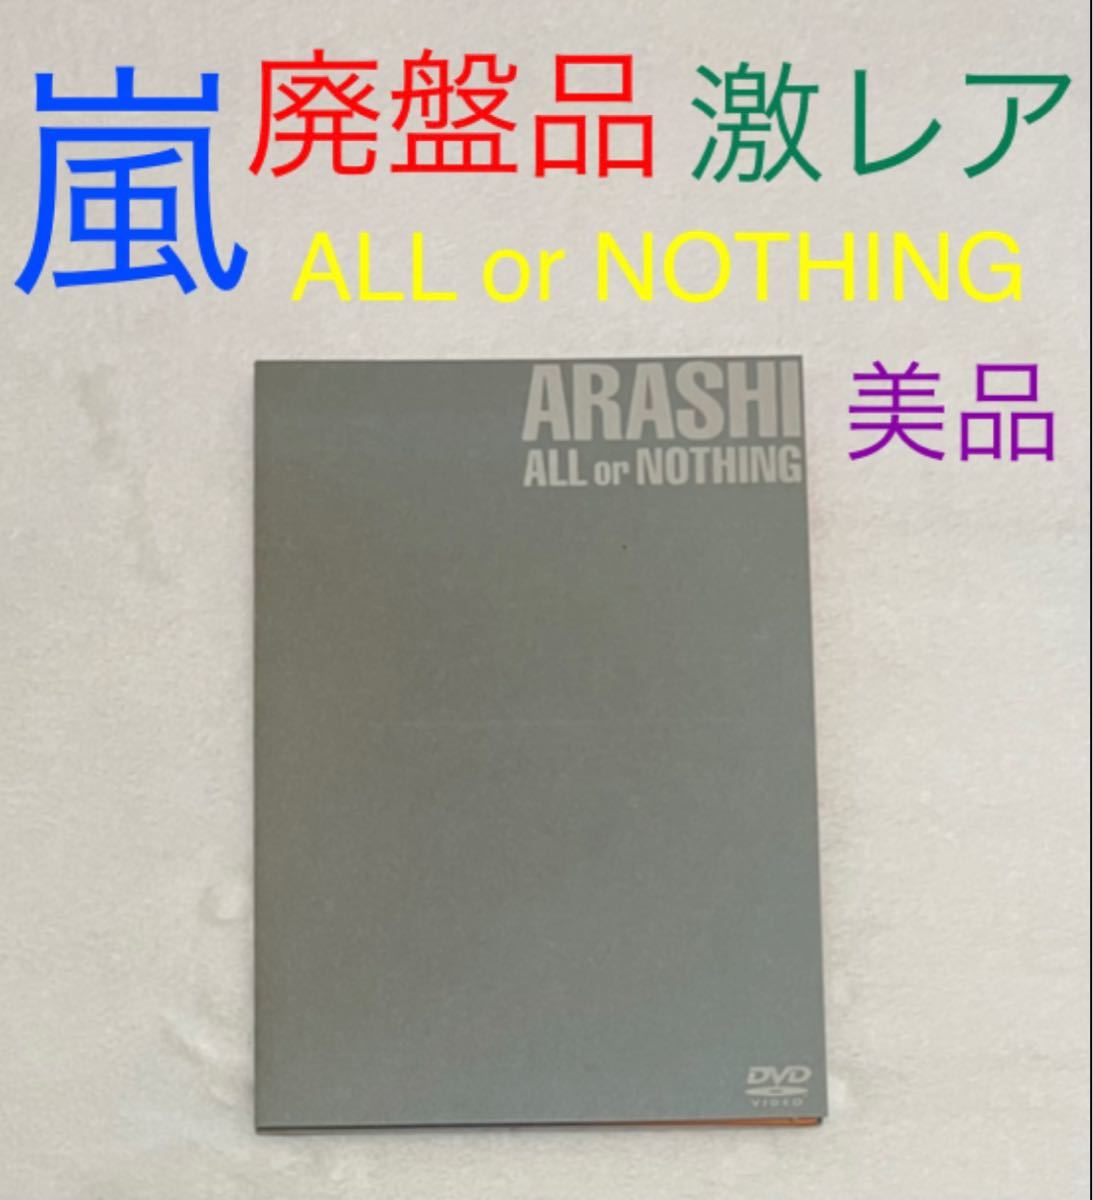 新しいコレクション ARASHI ALL or NOTHING 廃盤品 ライブDVD www.hallo.tv